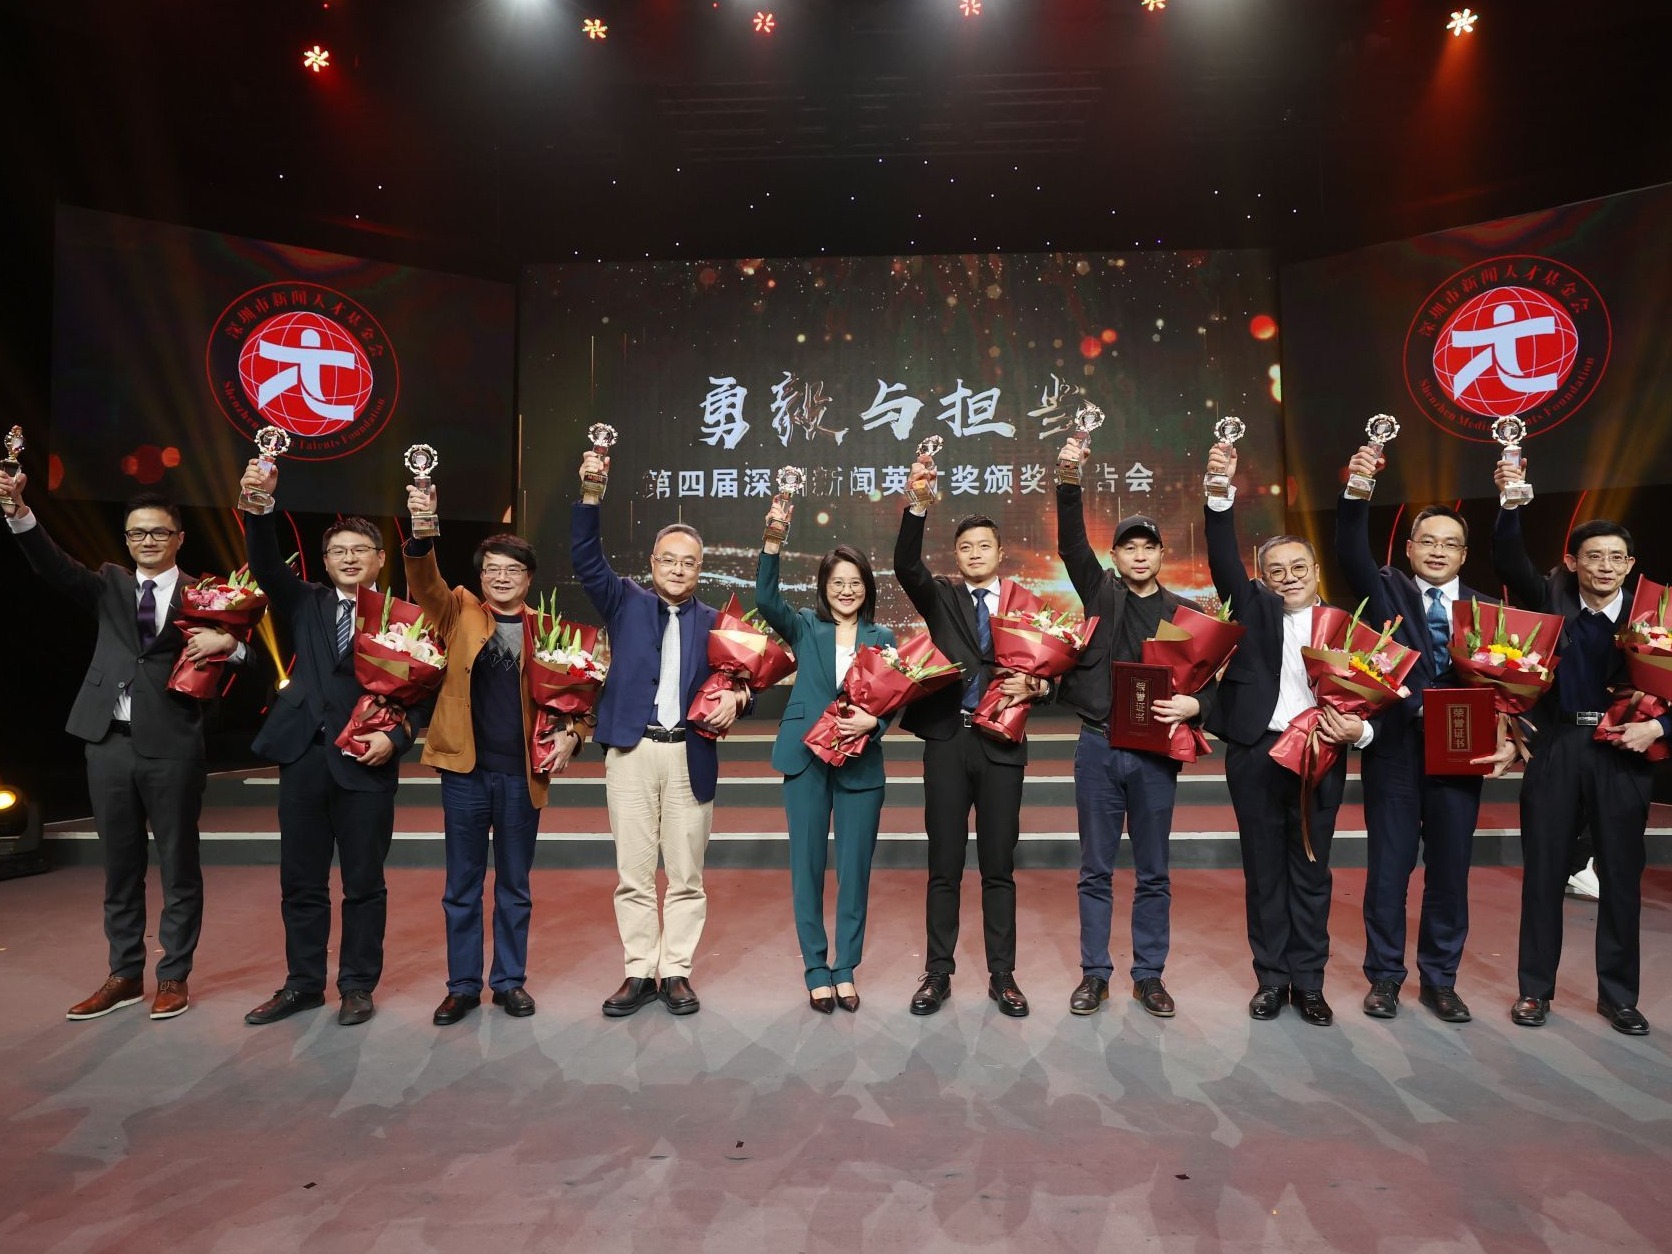 致敬，10位深圳新闻英才获奖！还有17位抗疫英雄先锋记者受表彰